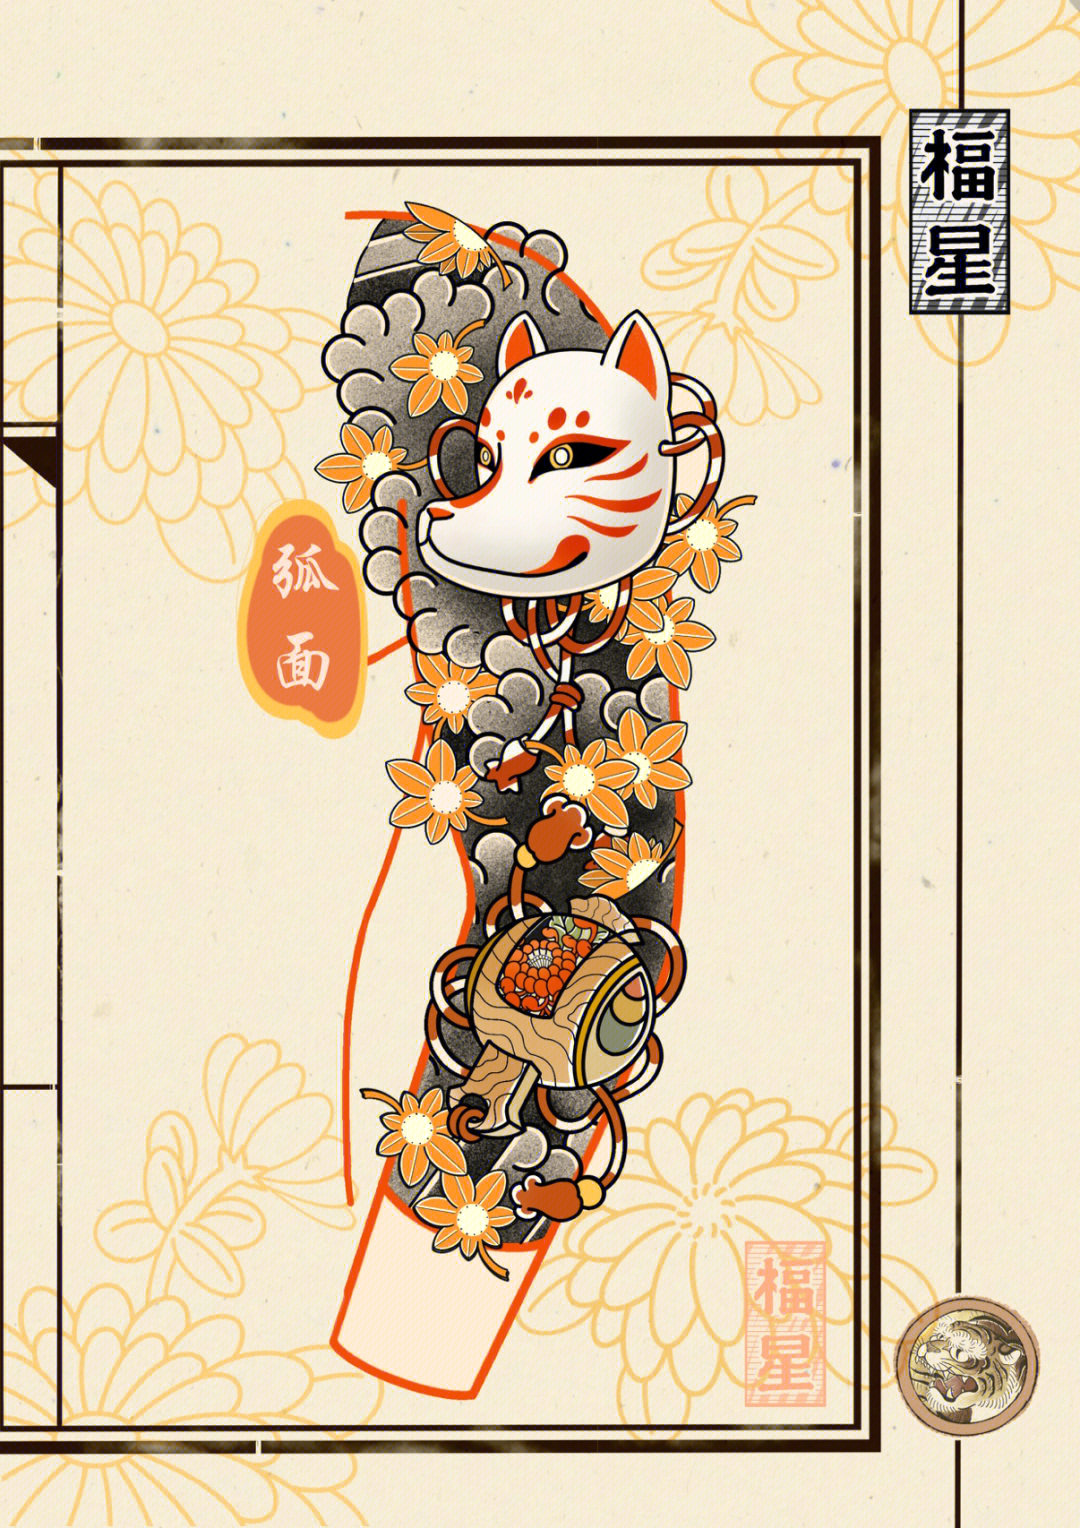 日式传统狐狸面具枫叶福锤纹身手稿设计no3